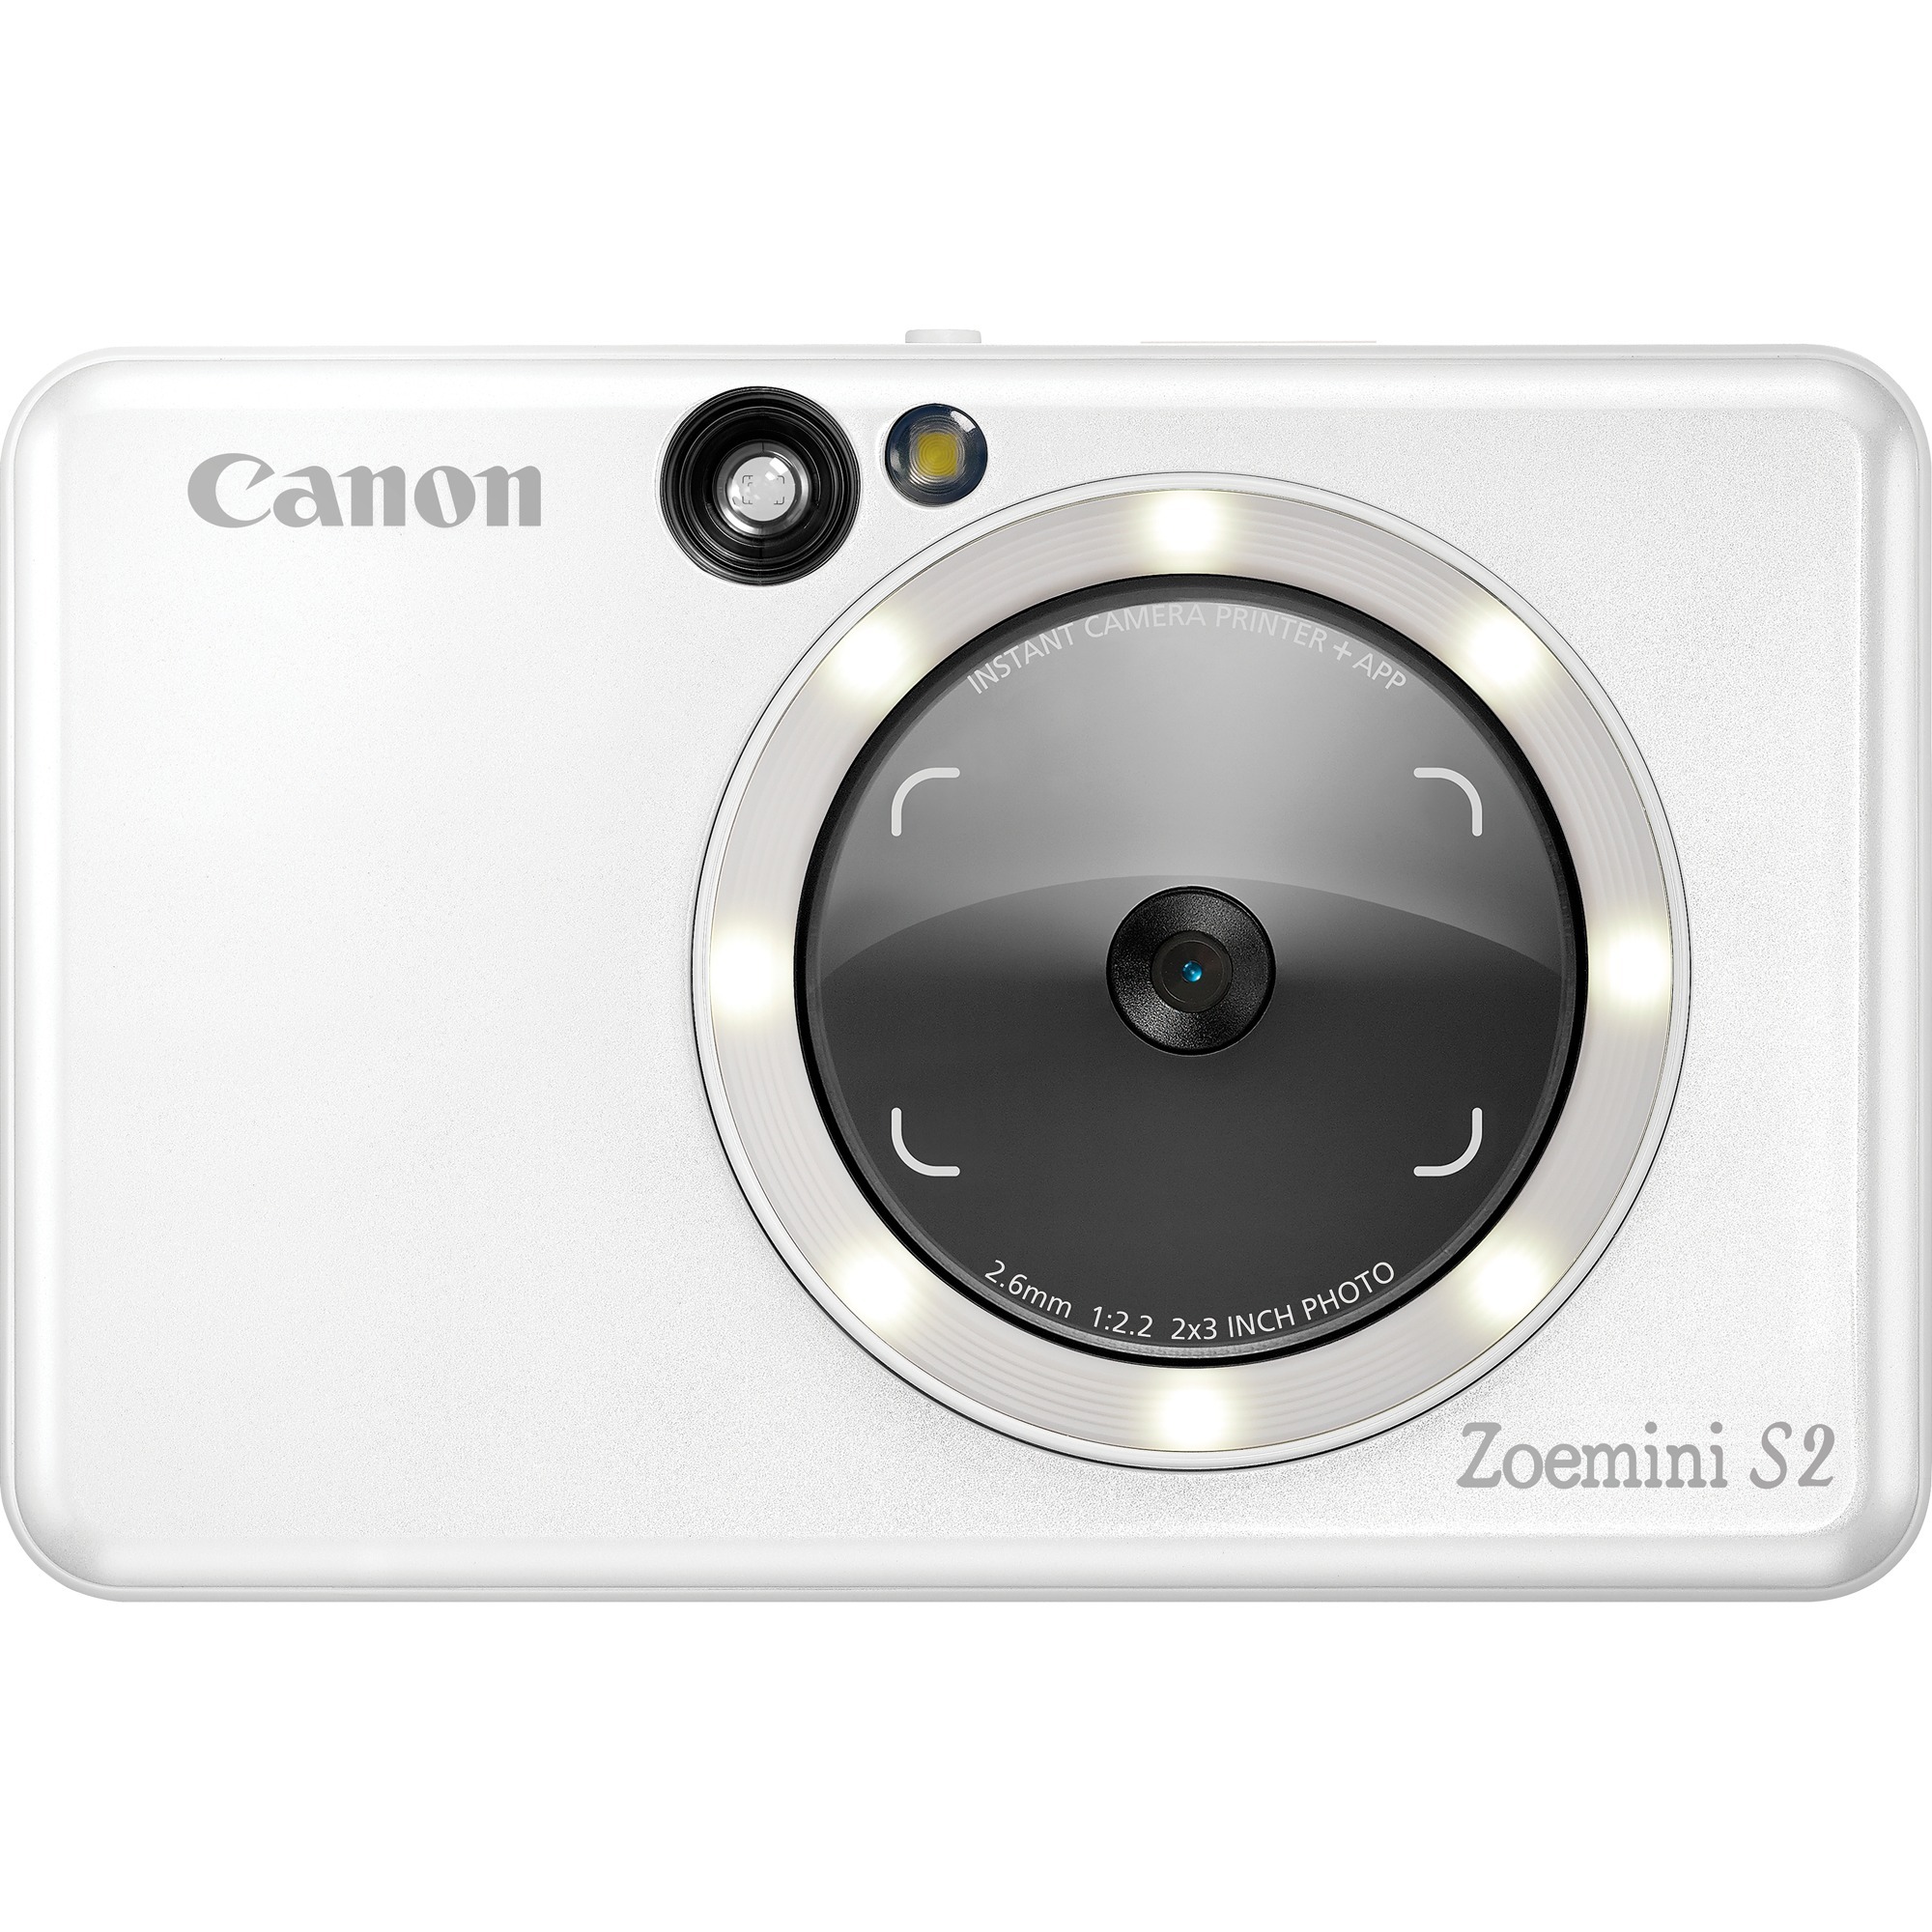 Image of Alternate - Zoemini S2, Sofortbildkamera online einkaufen bei Alternate